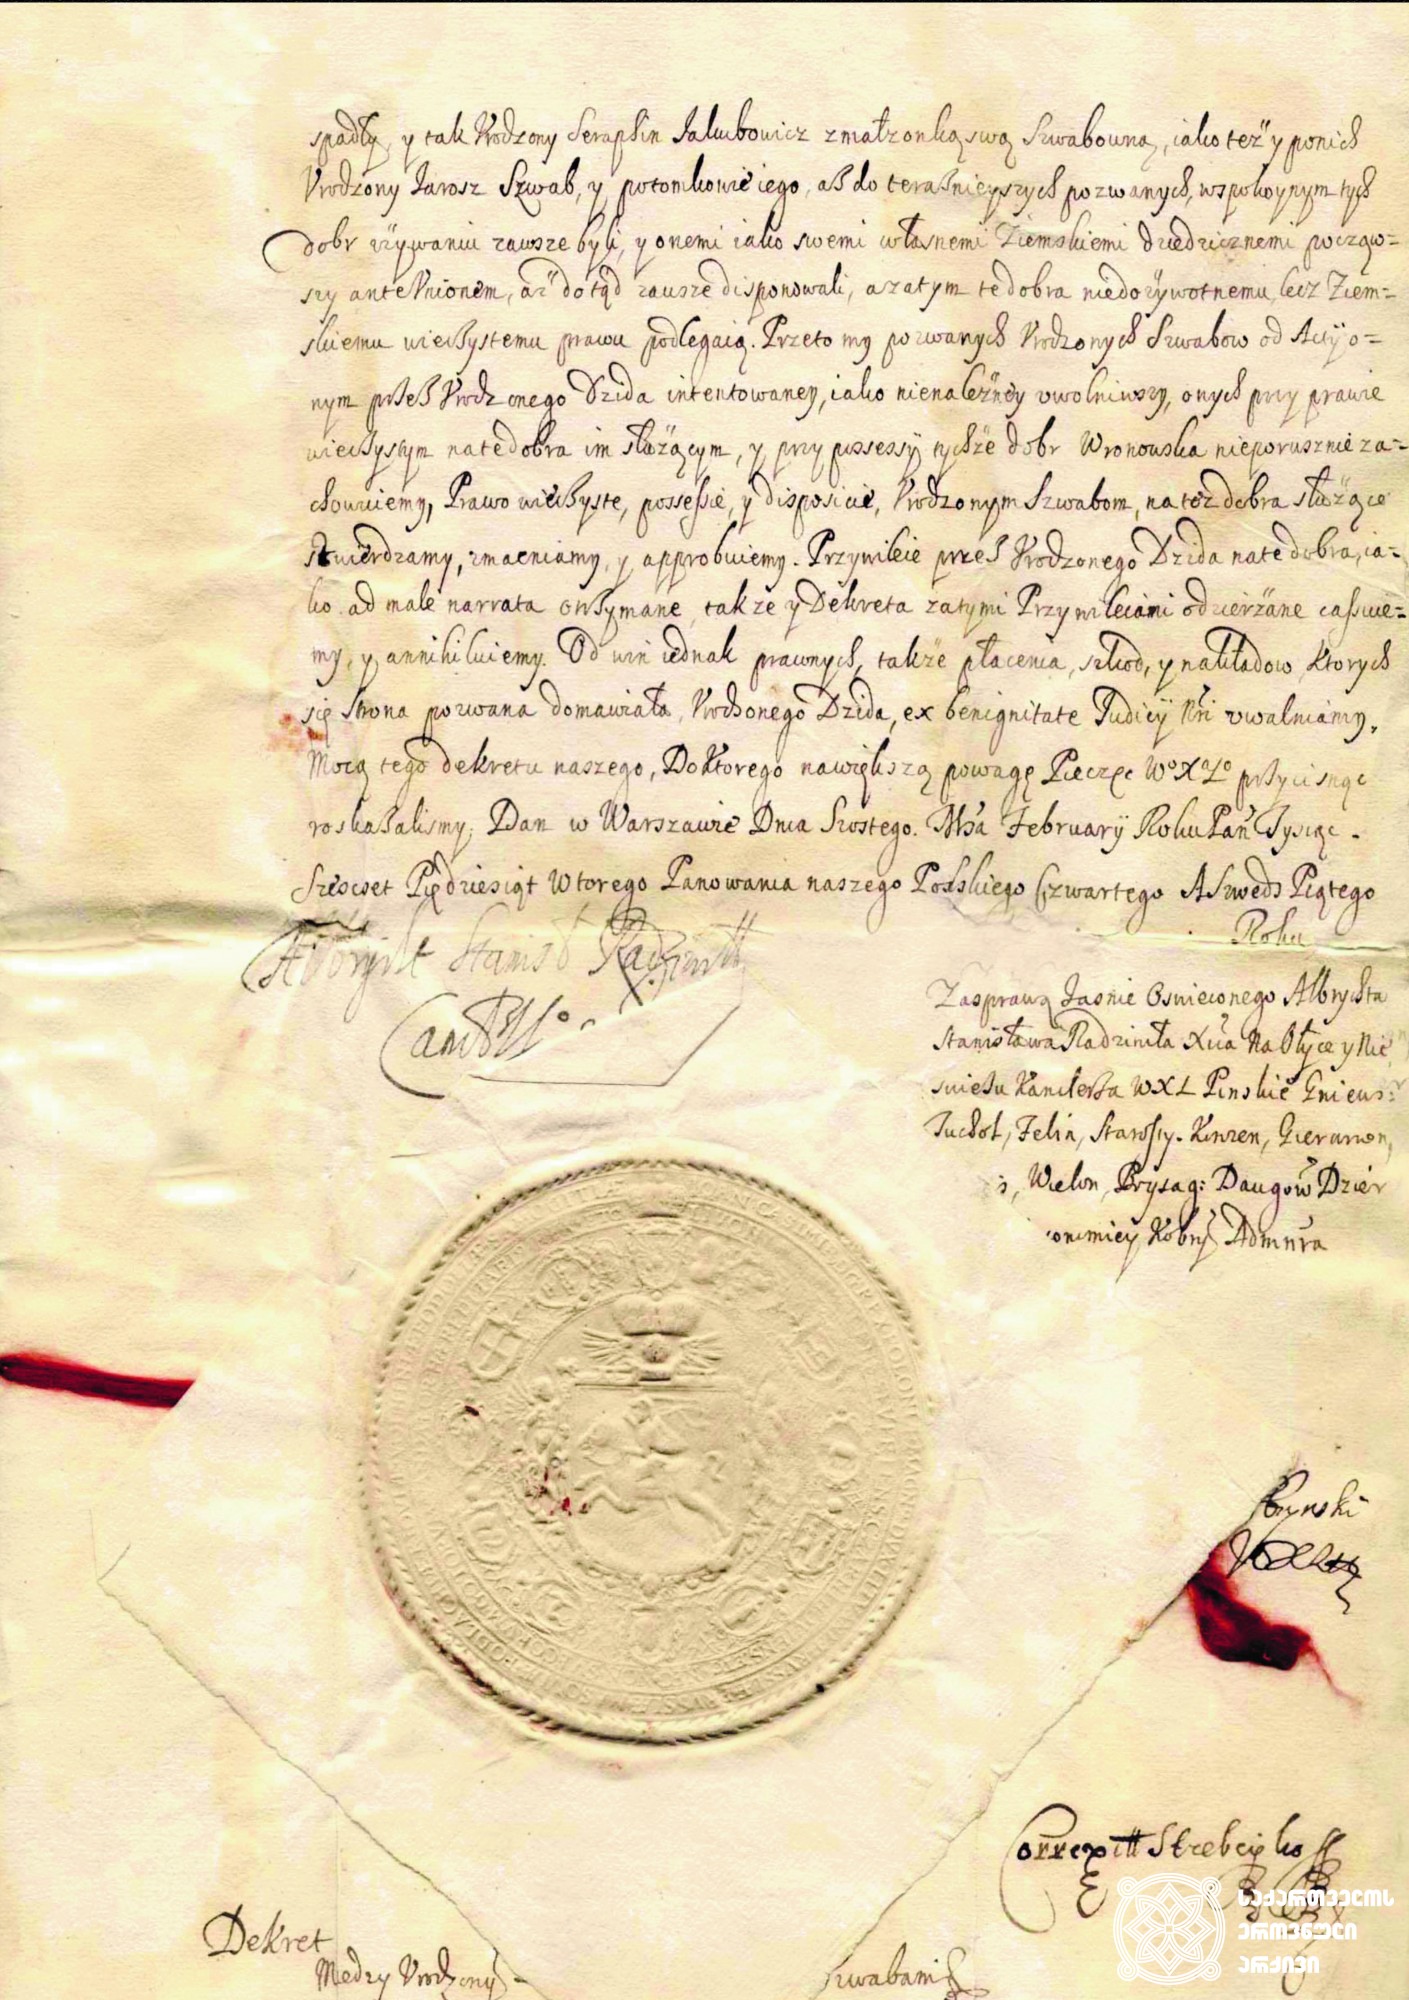 1663-1668 წლები. პოლონეთის მეფე იან კაზიმირის დეკრეტი. <br>
დედანი. აქვს ლუქის ბეჭედი. პოლონურ ენაზე. <br>
დაცულია საქართველოს ეროვნულ არქივში. <br>
1663-1668. The decree of the King Ian Casimir of Poland. <br>
Original with the sealing wax. In Polish. <br>
Preserved at the National Archives of Georgia.